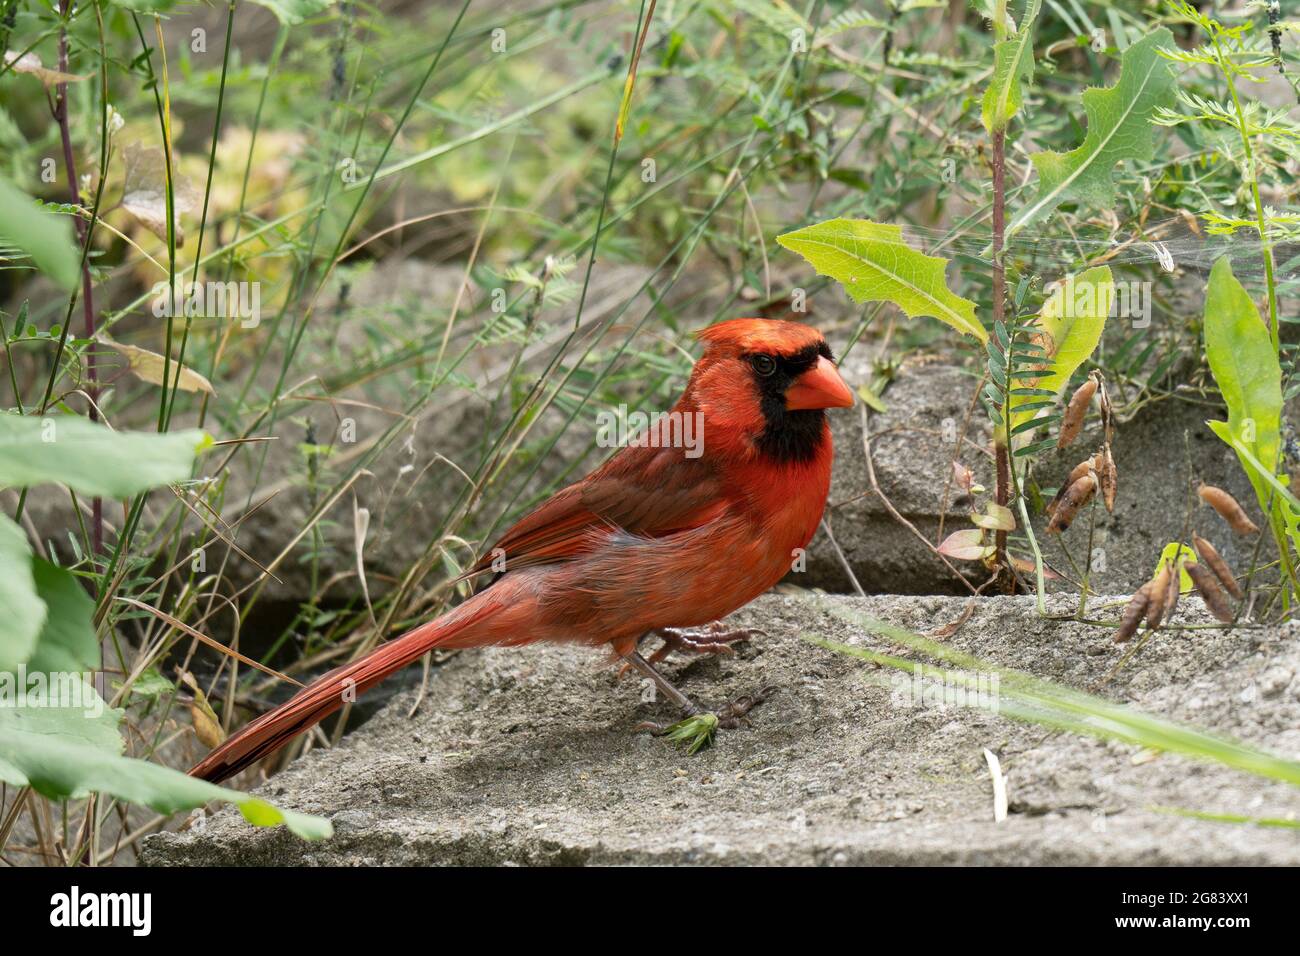 Northern Cardinal  (Cardinalis cardinalis), Red Cardinal Standing on the ground Stock Photo